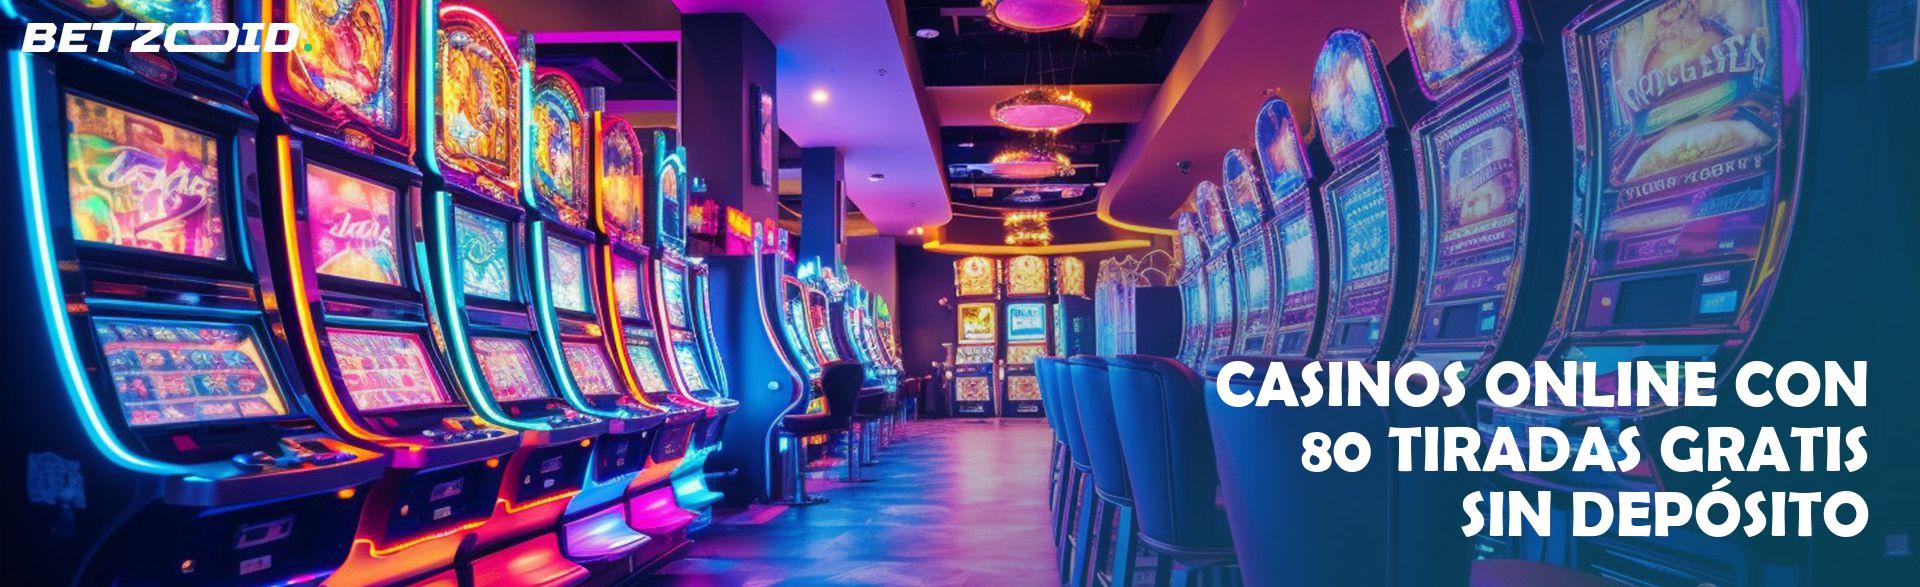 Casinos Online con 80 Tiradas Gratis sin Depósito.